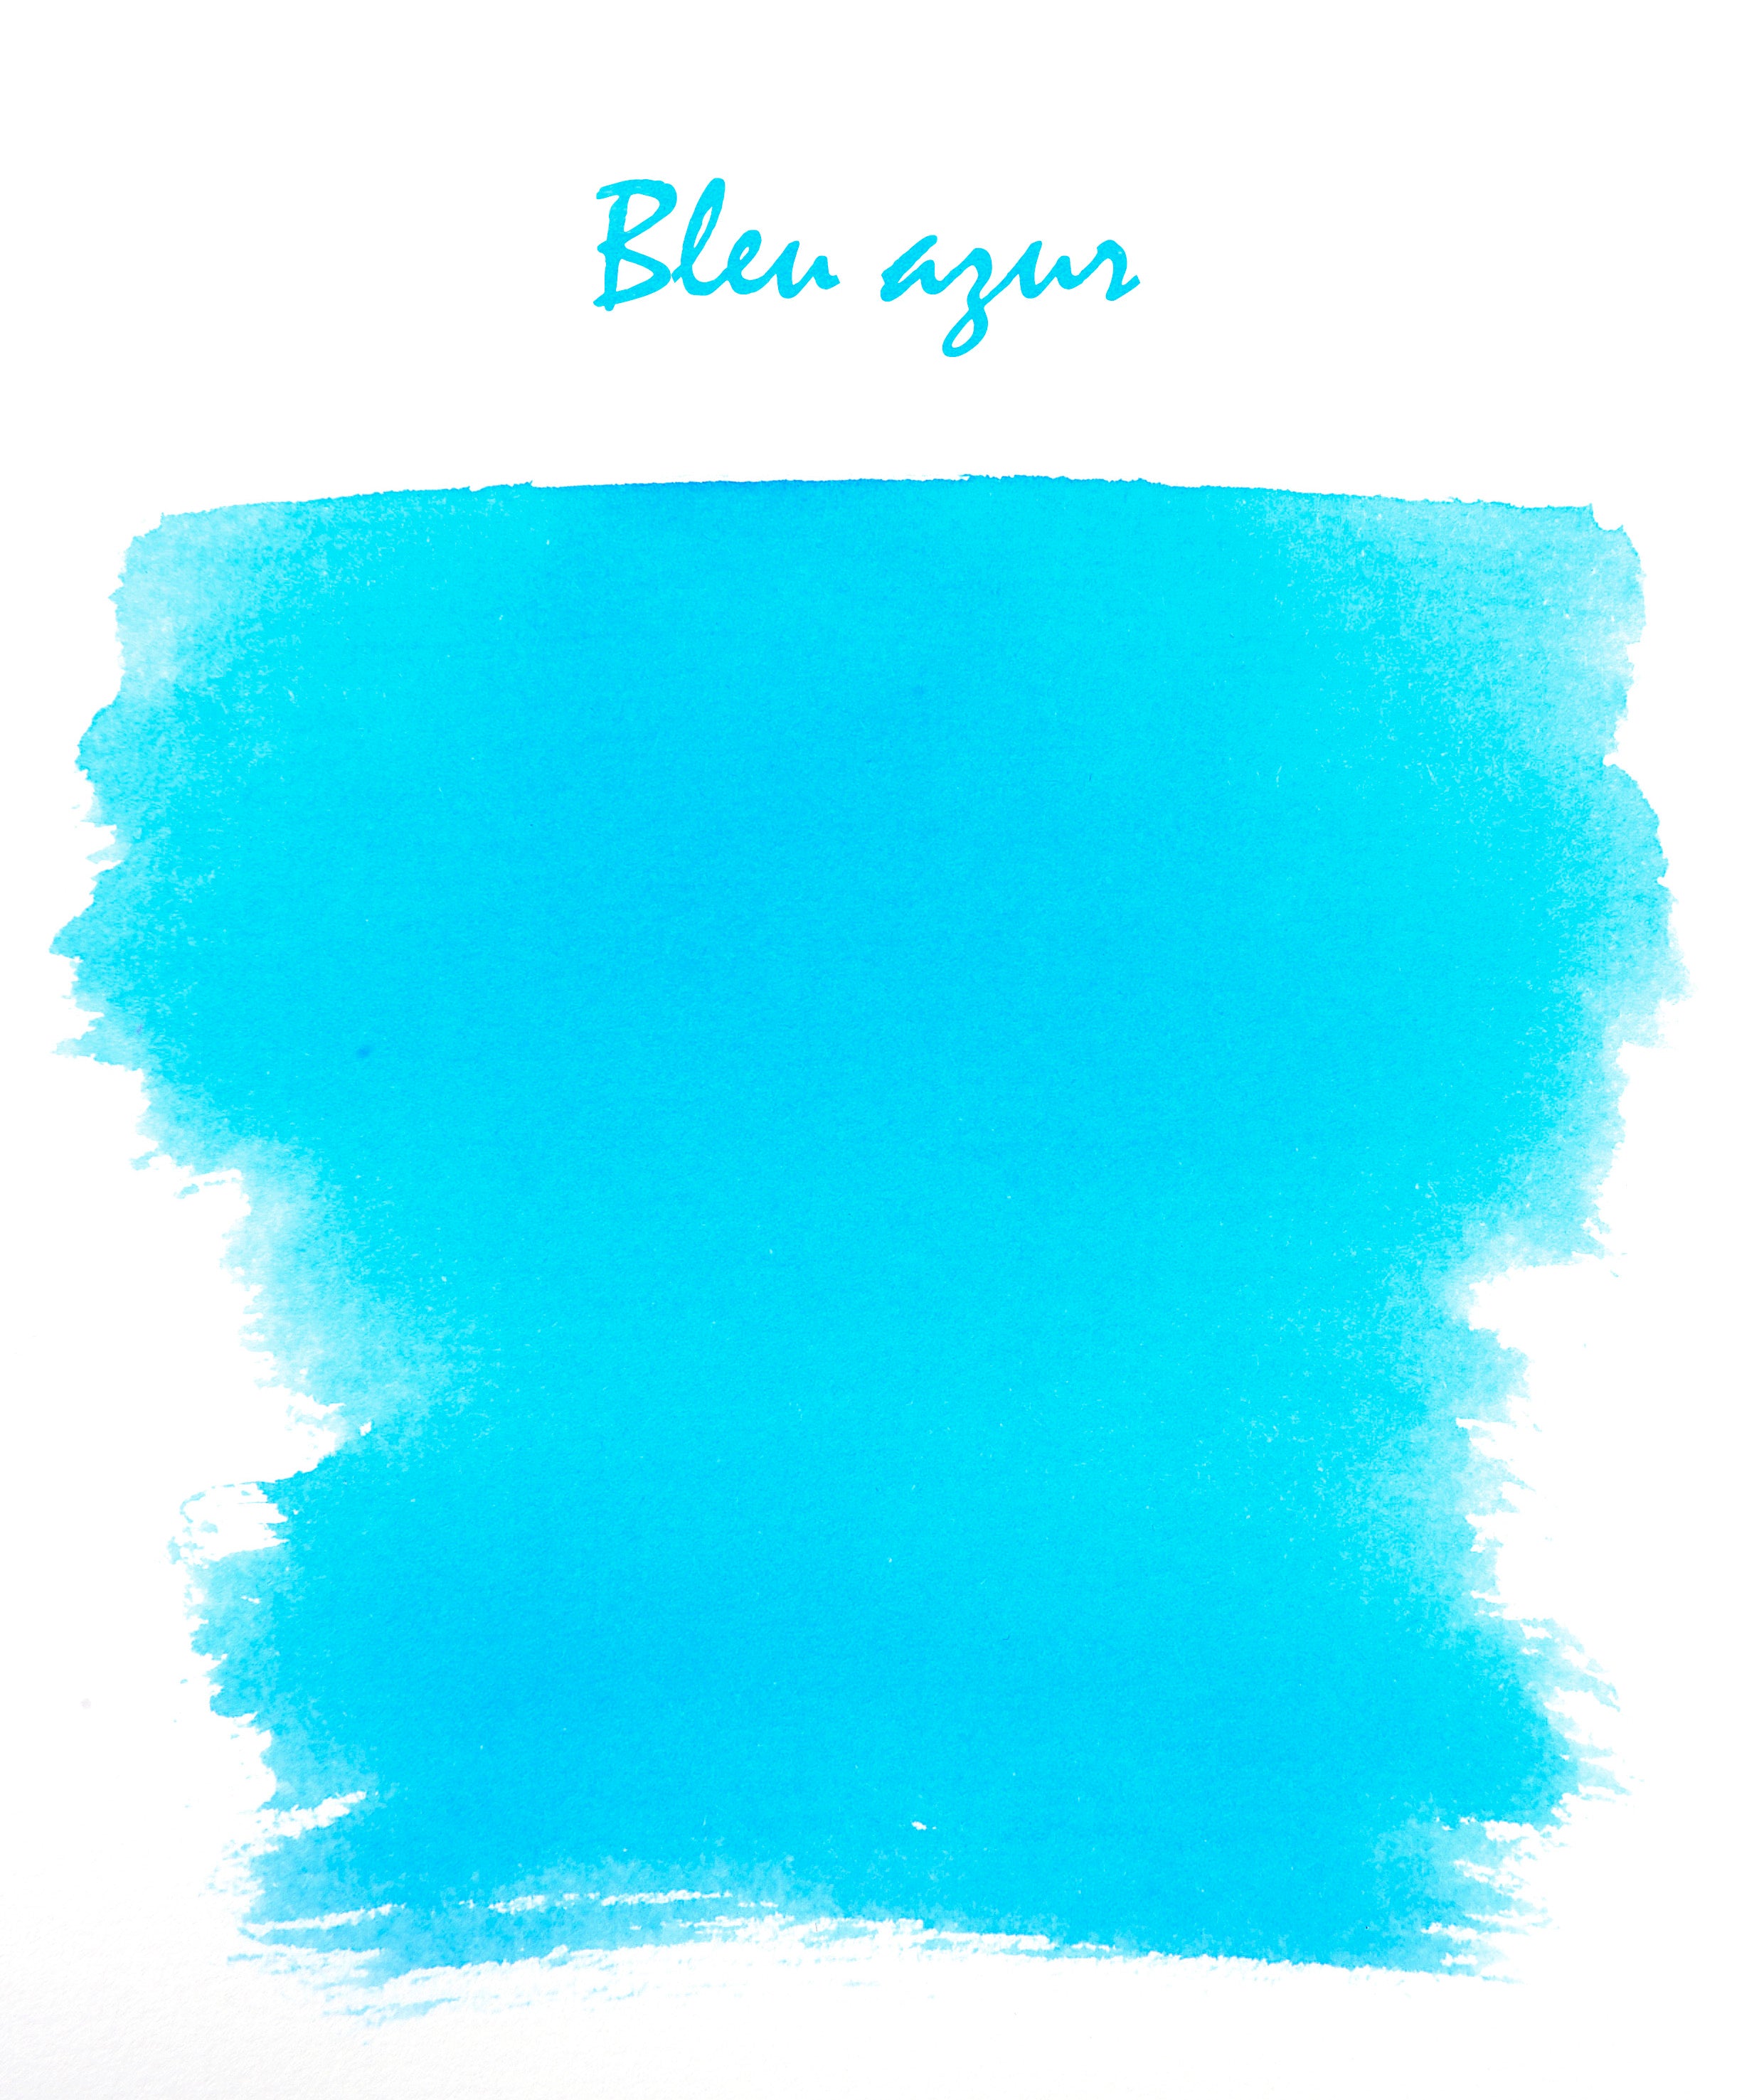 Herbin - Bleu azur (azurblau), 10 ml